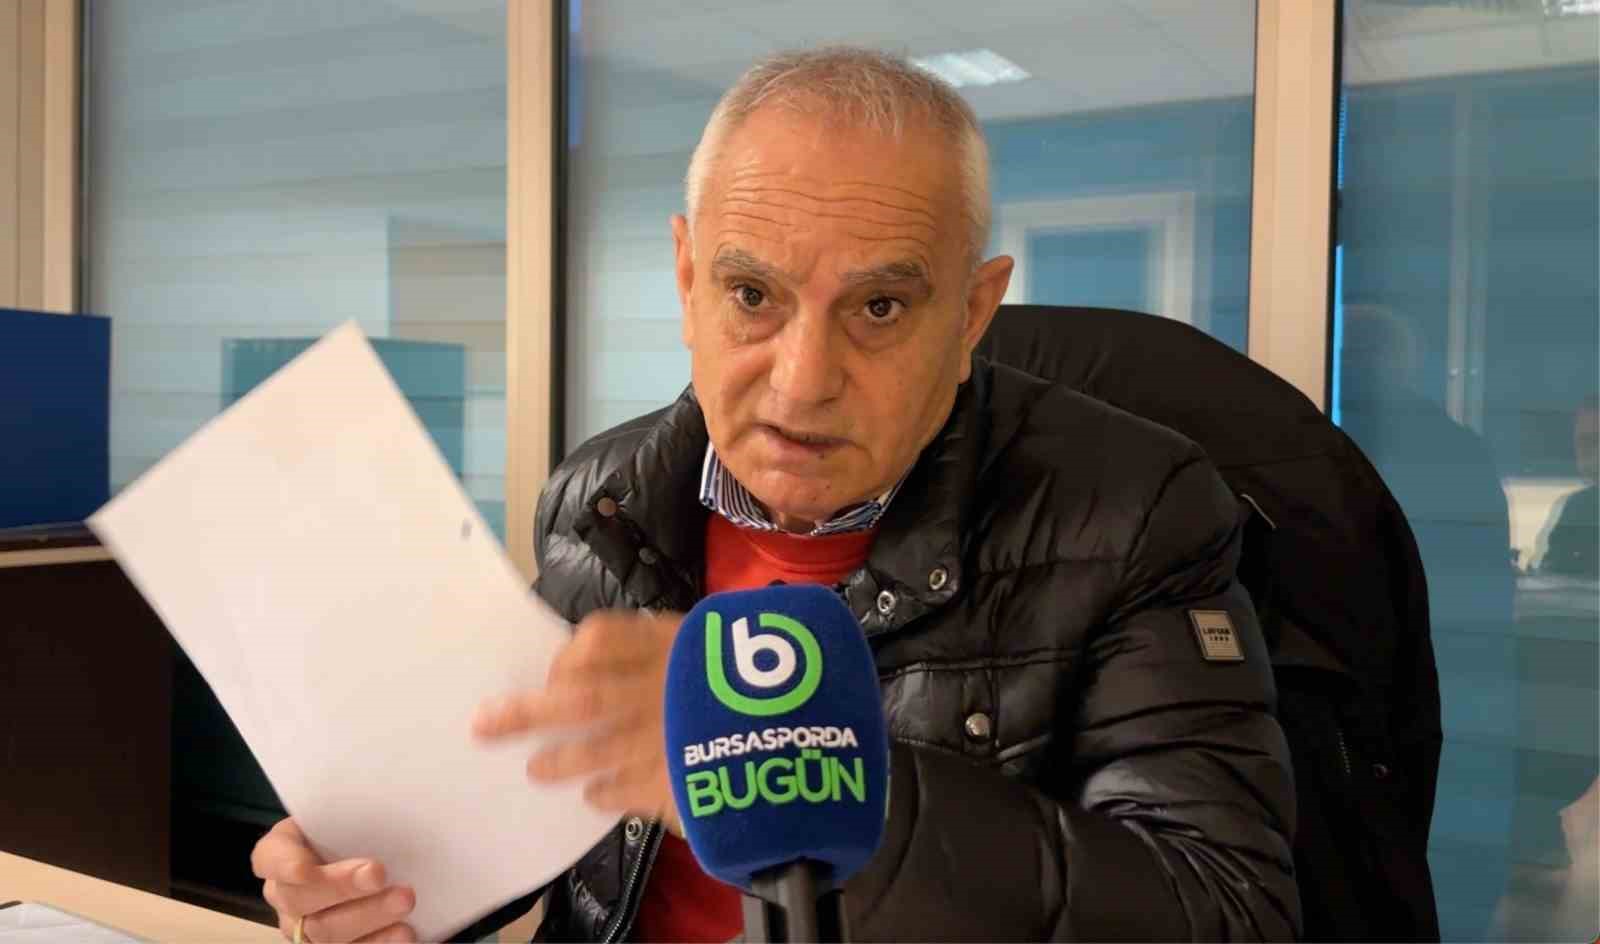 Bursaspor Başkanı Recep Günay: “Bursasporun Yaşaması Tffnin Elinde”